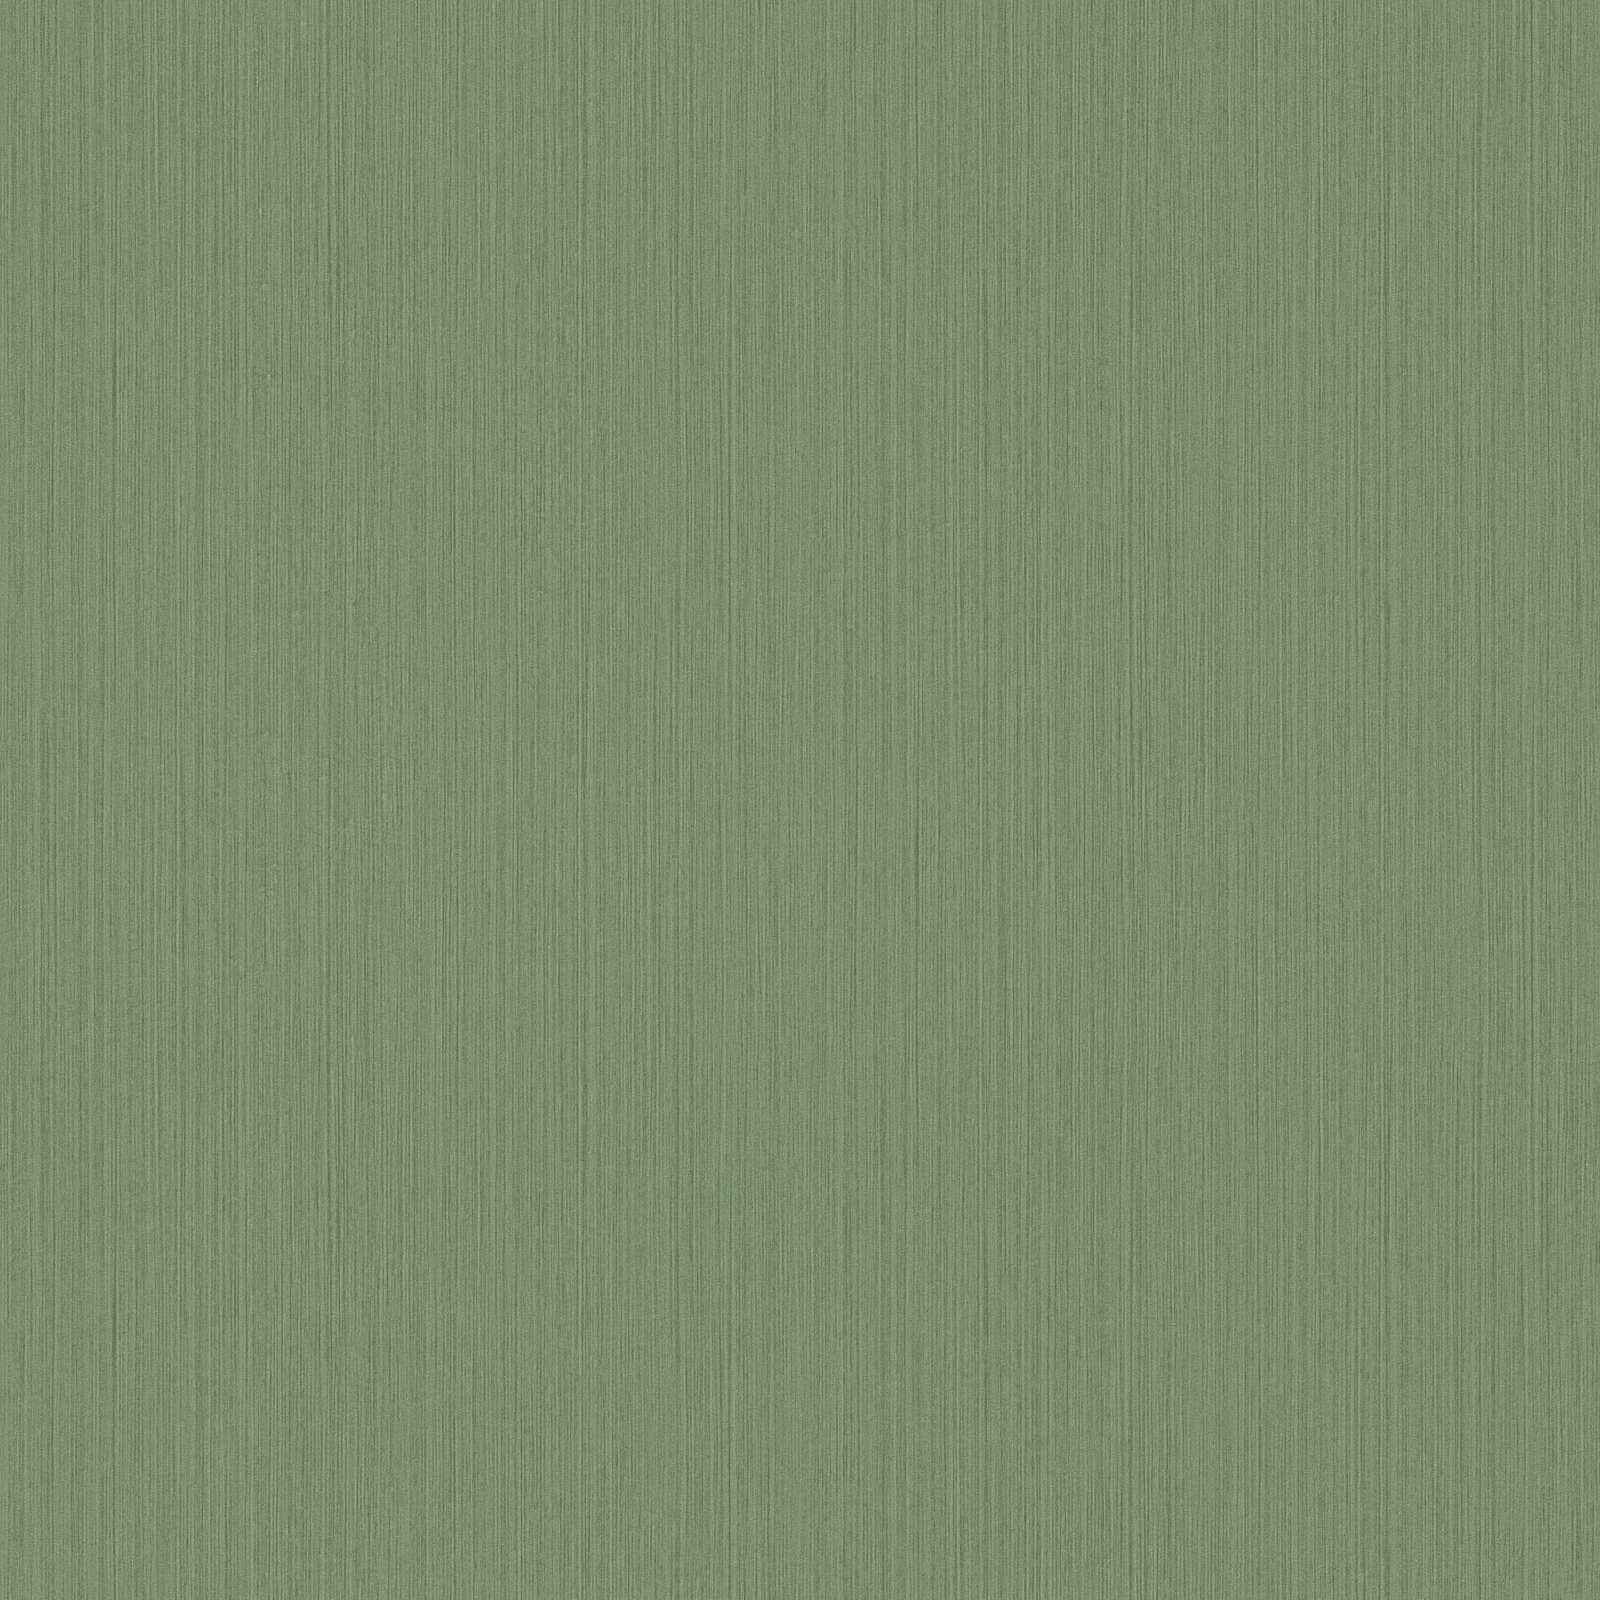 Einfarbige Tapete Grün mit meliertem Textileffekt von MICHALSKY
